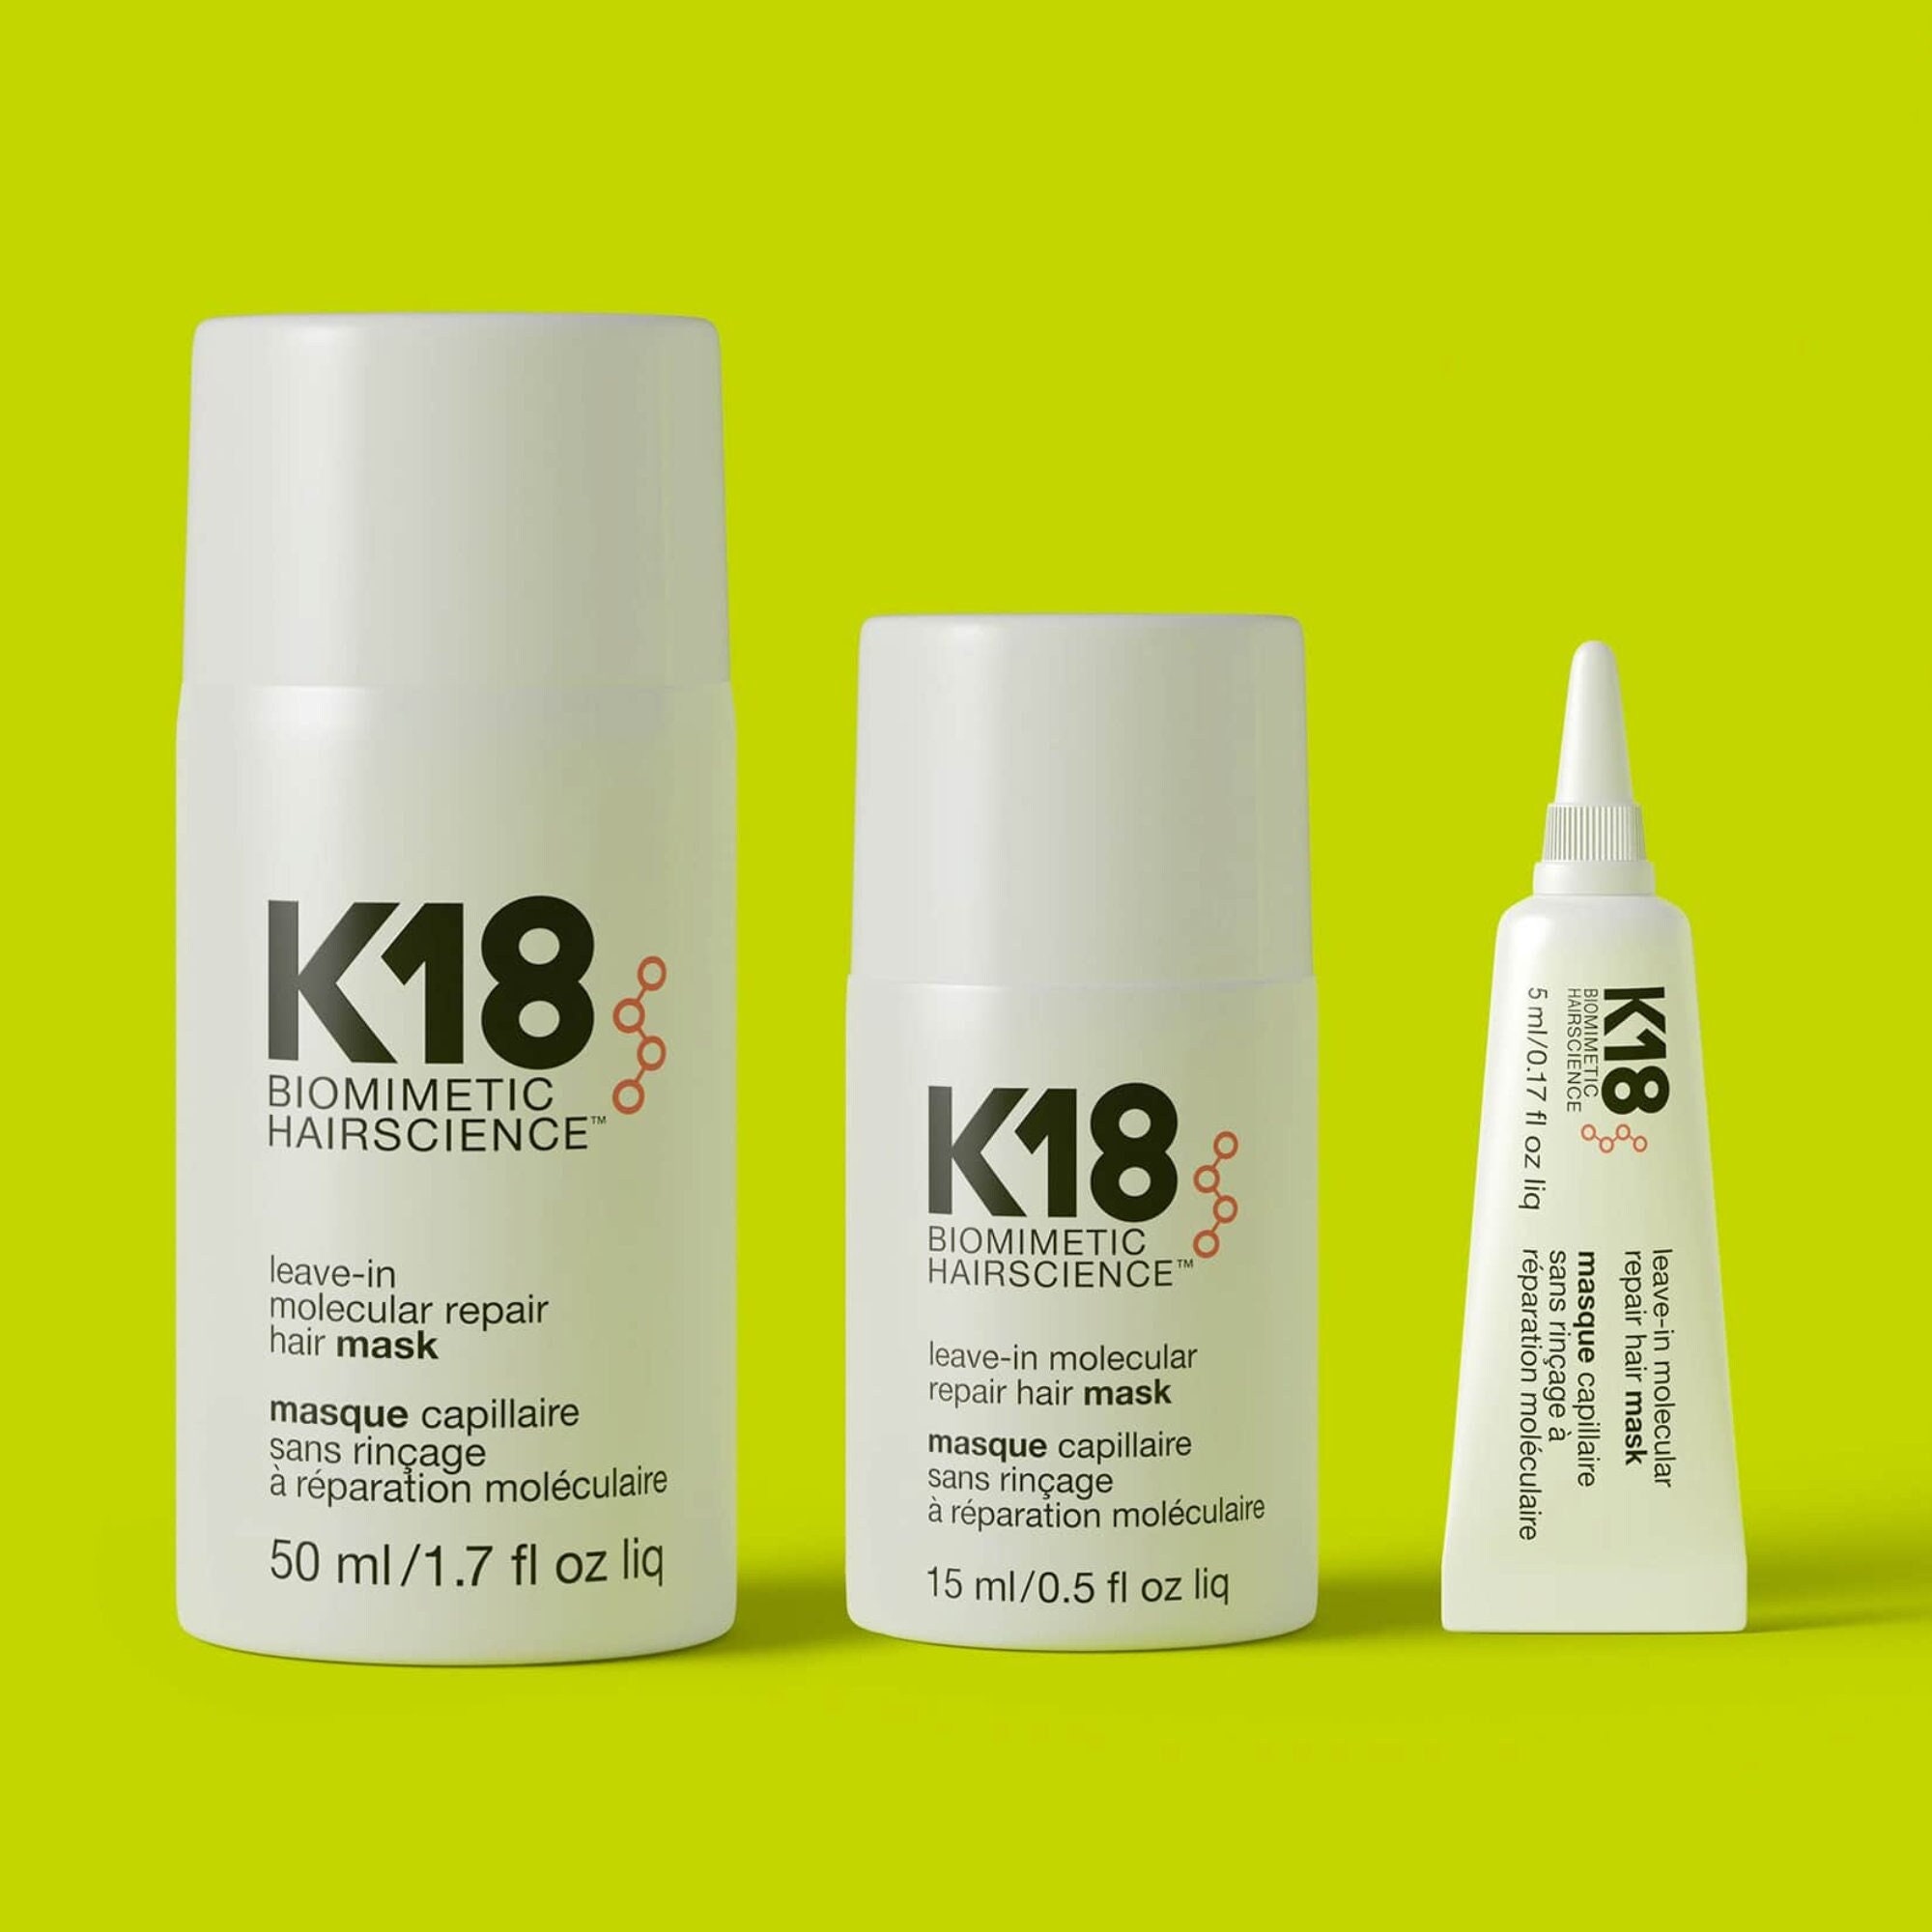 Buy K18 Leave-in Molecular Repair Hair Mask Online in India - Etsy